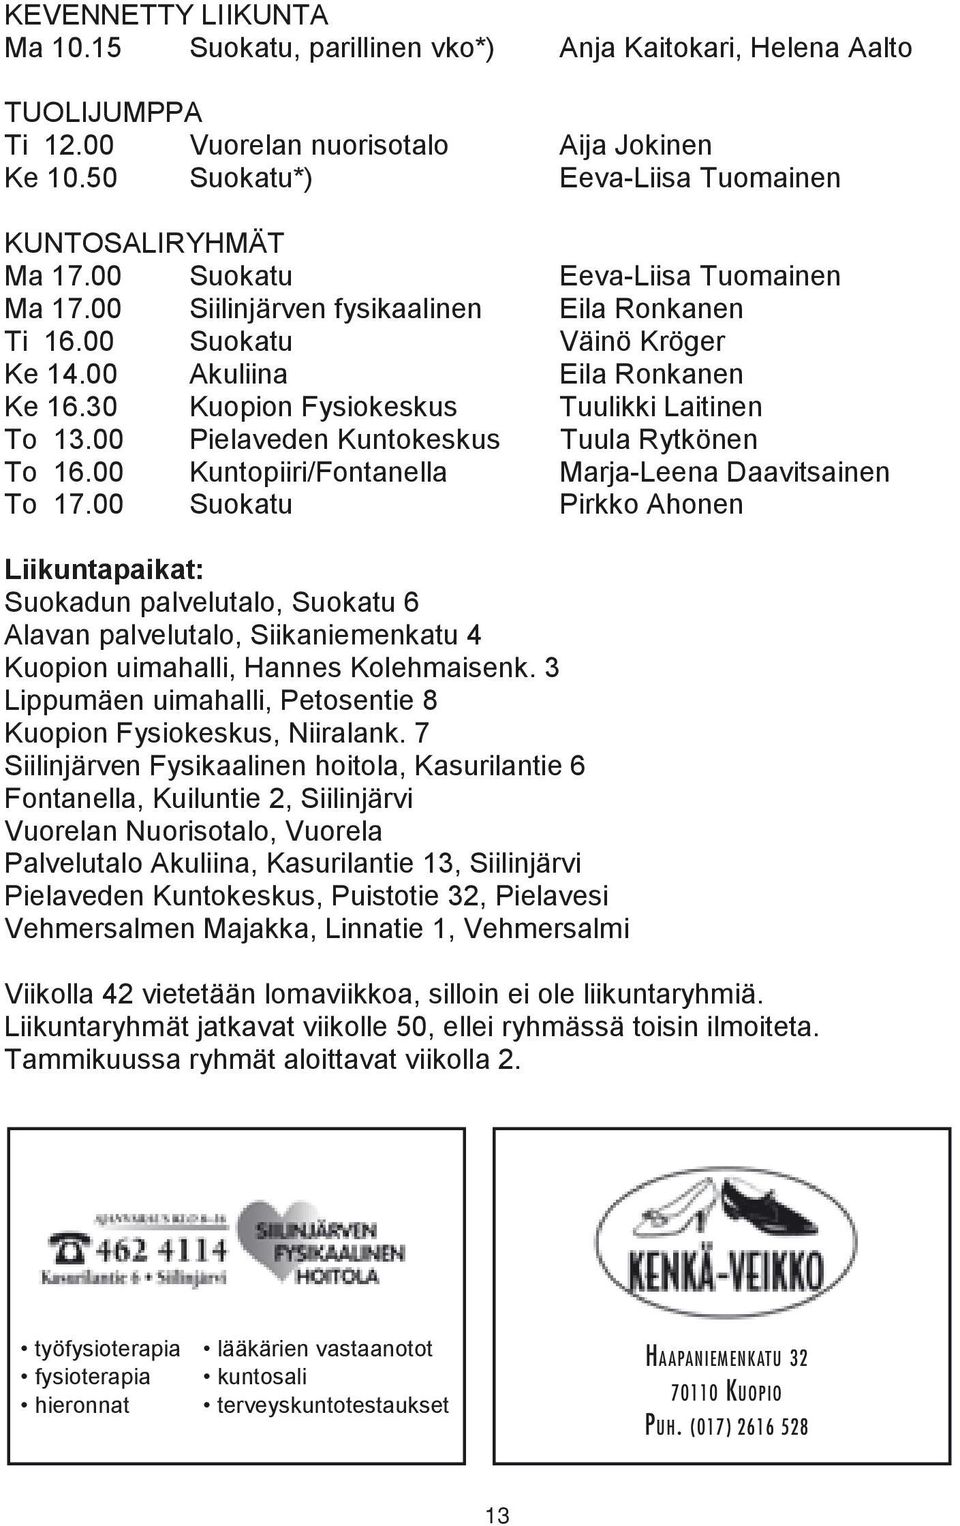 00 Akuliina Eila Ronkanen Ke 16.30 Kuopion Fysiokeskus Tuulikki Laitinen To 13.00 Pielaveden Kuntokeskus Tuula Rytkönen To 16.00 Kuntopiiri/Fontanella Marja-Leena Daavitsainen To 17.